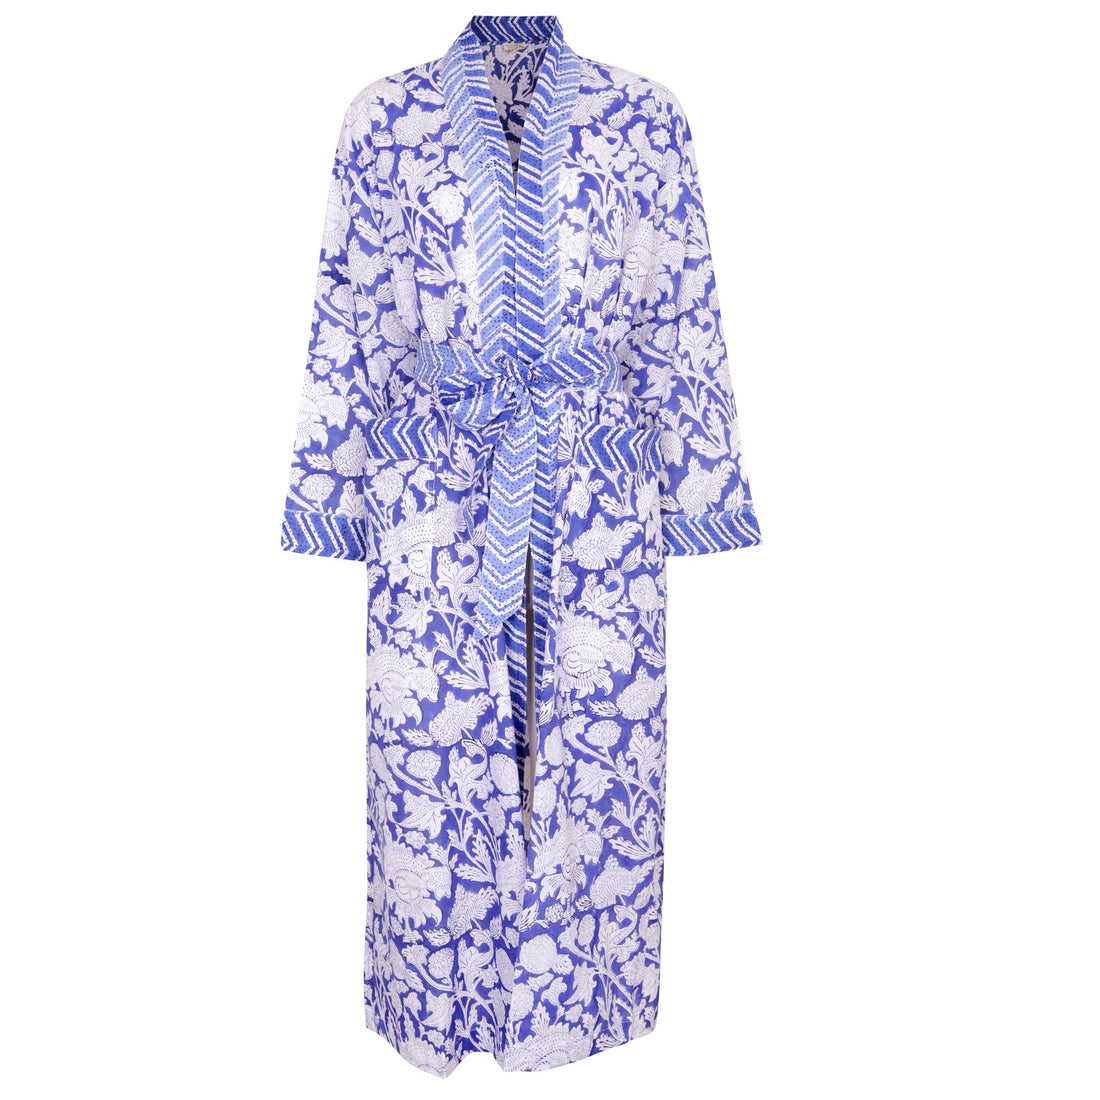 Hand Printed Cotton Kimono Robe -  China Blue